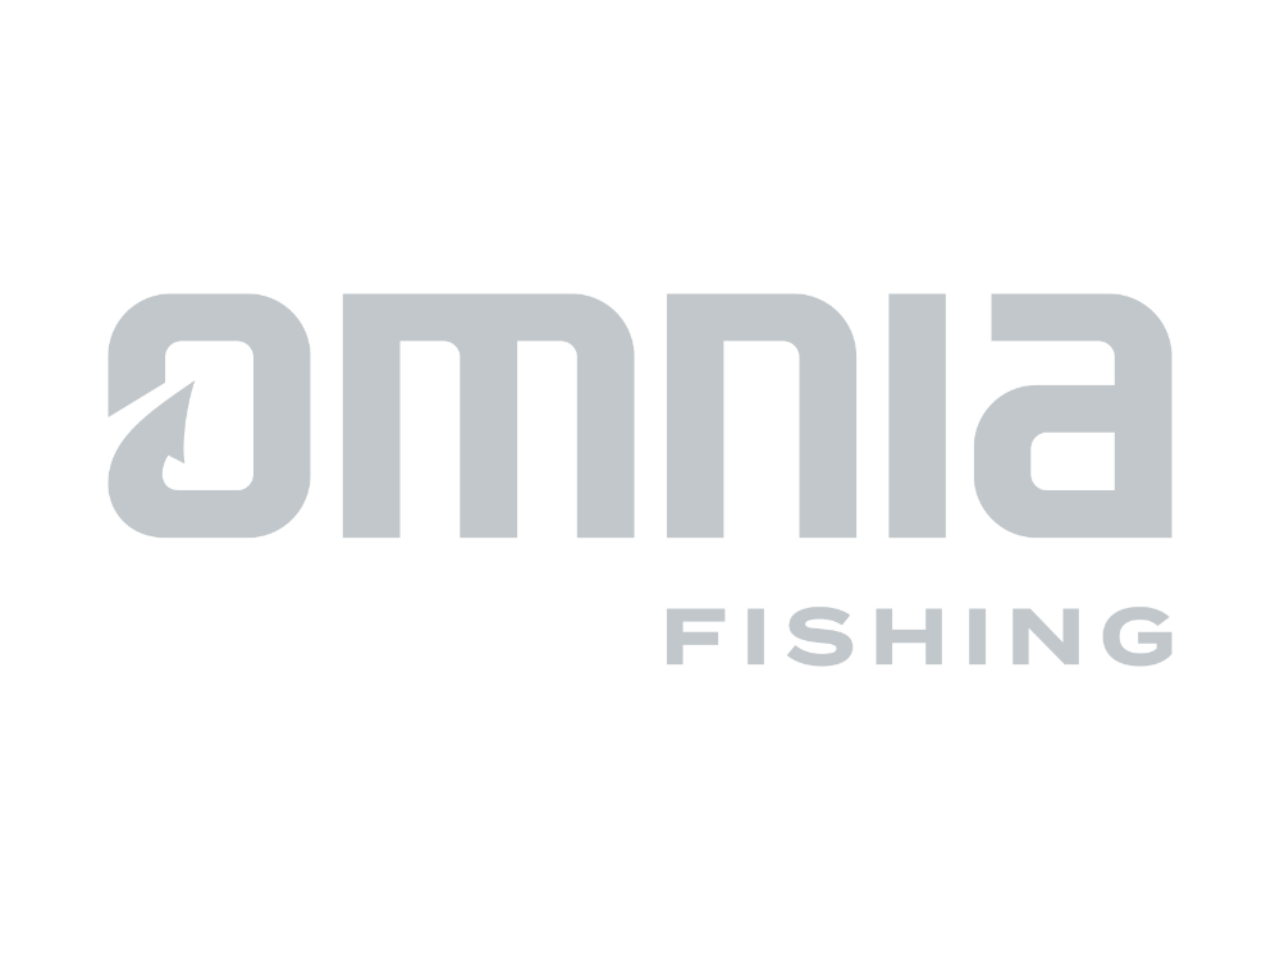 Omnia Fishing